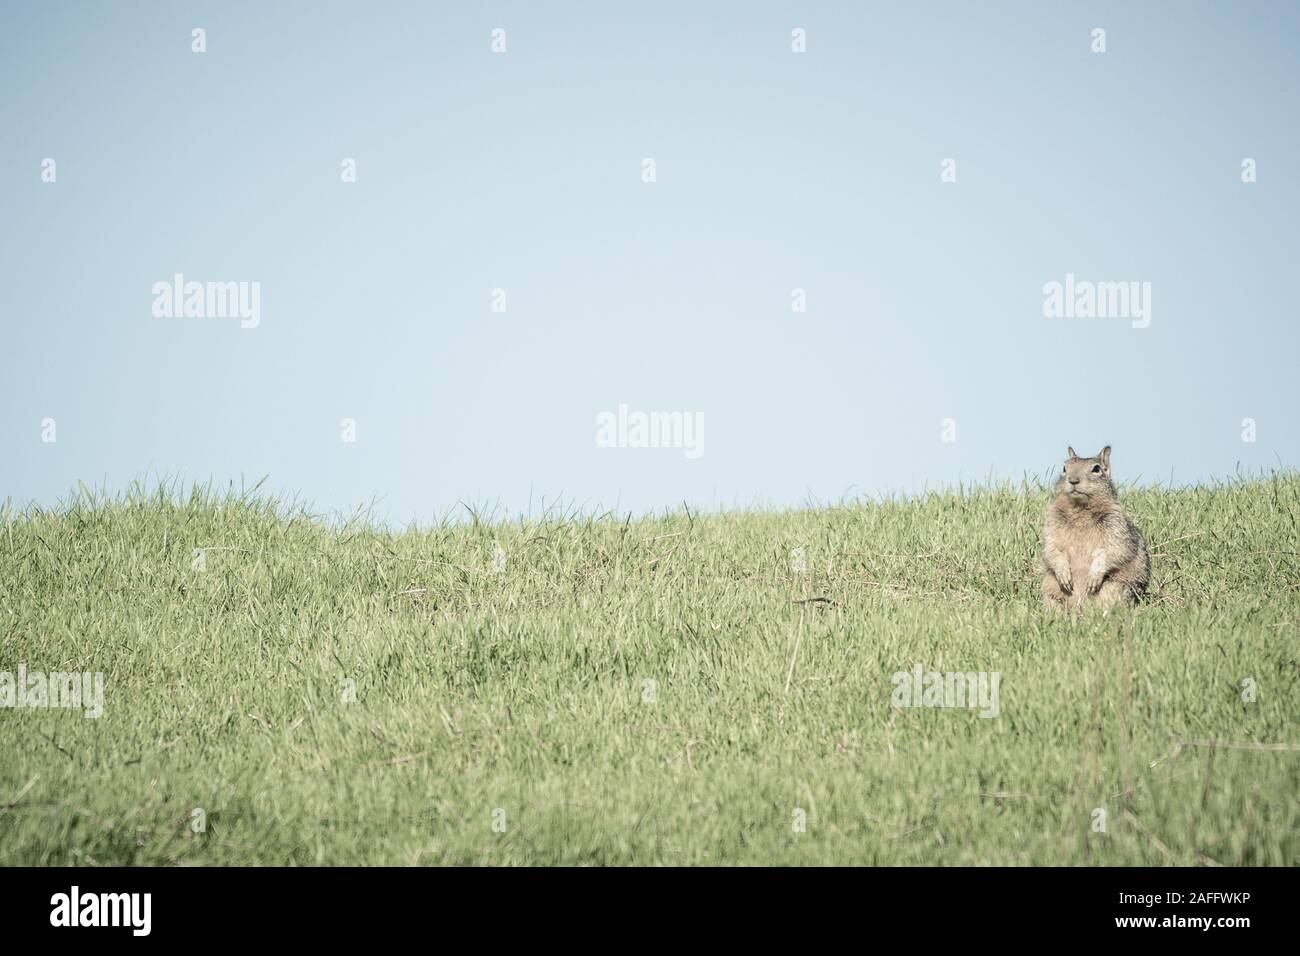 La massa della California lo scoiattolo seduto sulle zampe posteriori con zampe anteriori sollevate guardando dritto. Cielo azzurro e verde erba. Foto Stock